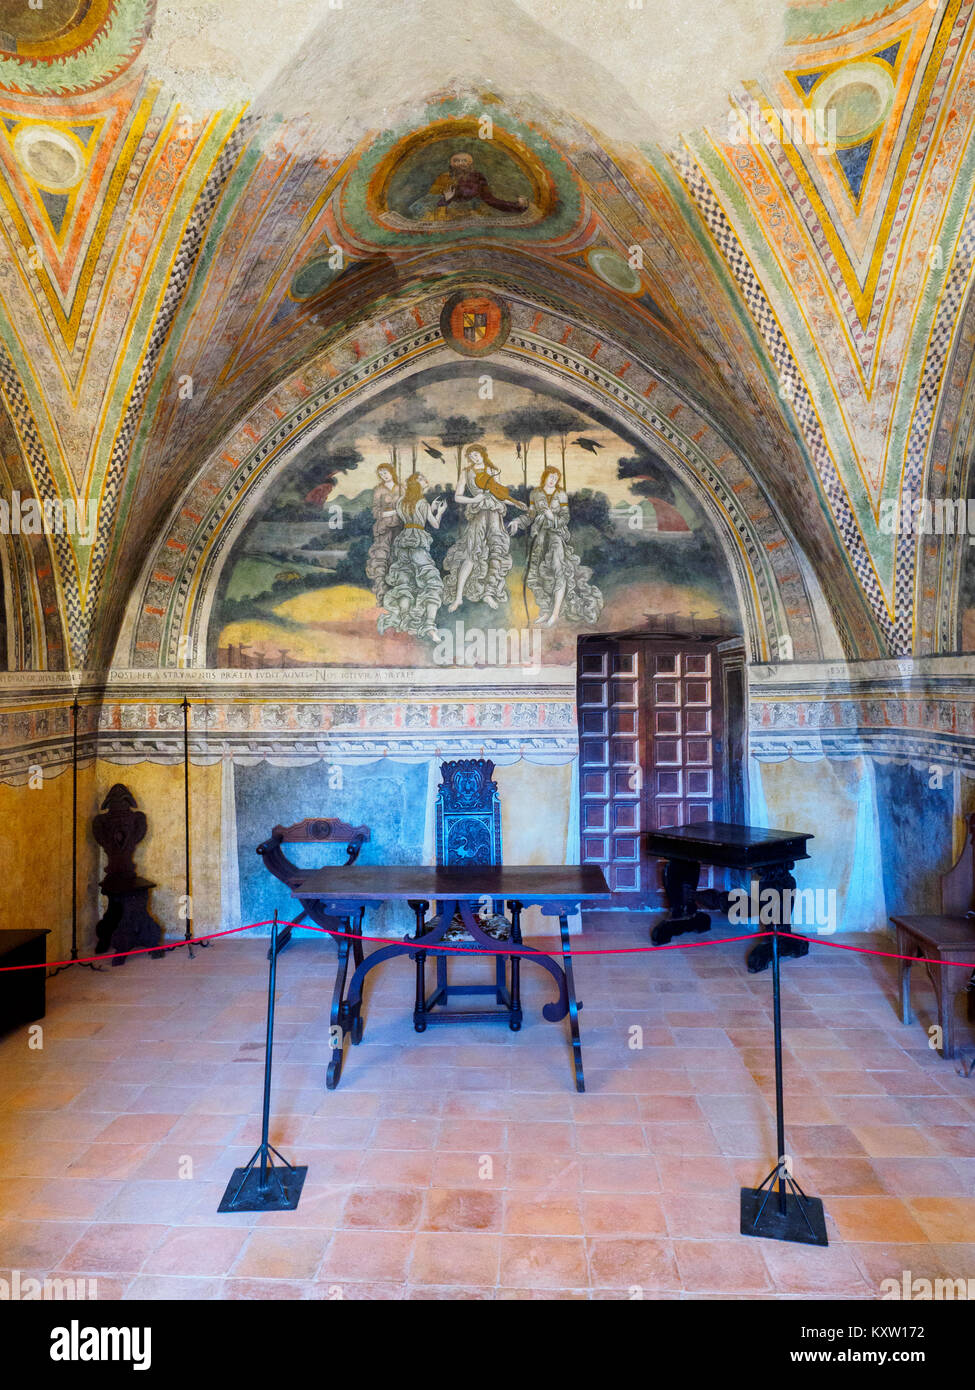 Chambre avec vieux château Caetani fresque médiévale dans la ville médiévale de Sermoneta - Latina, Italie Banque D'Images